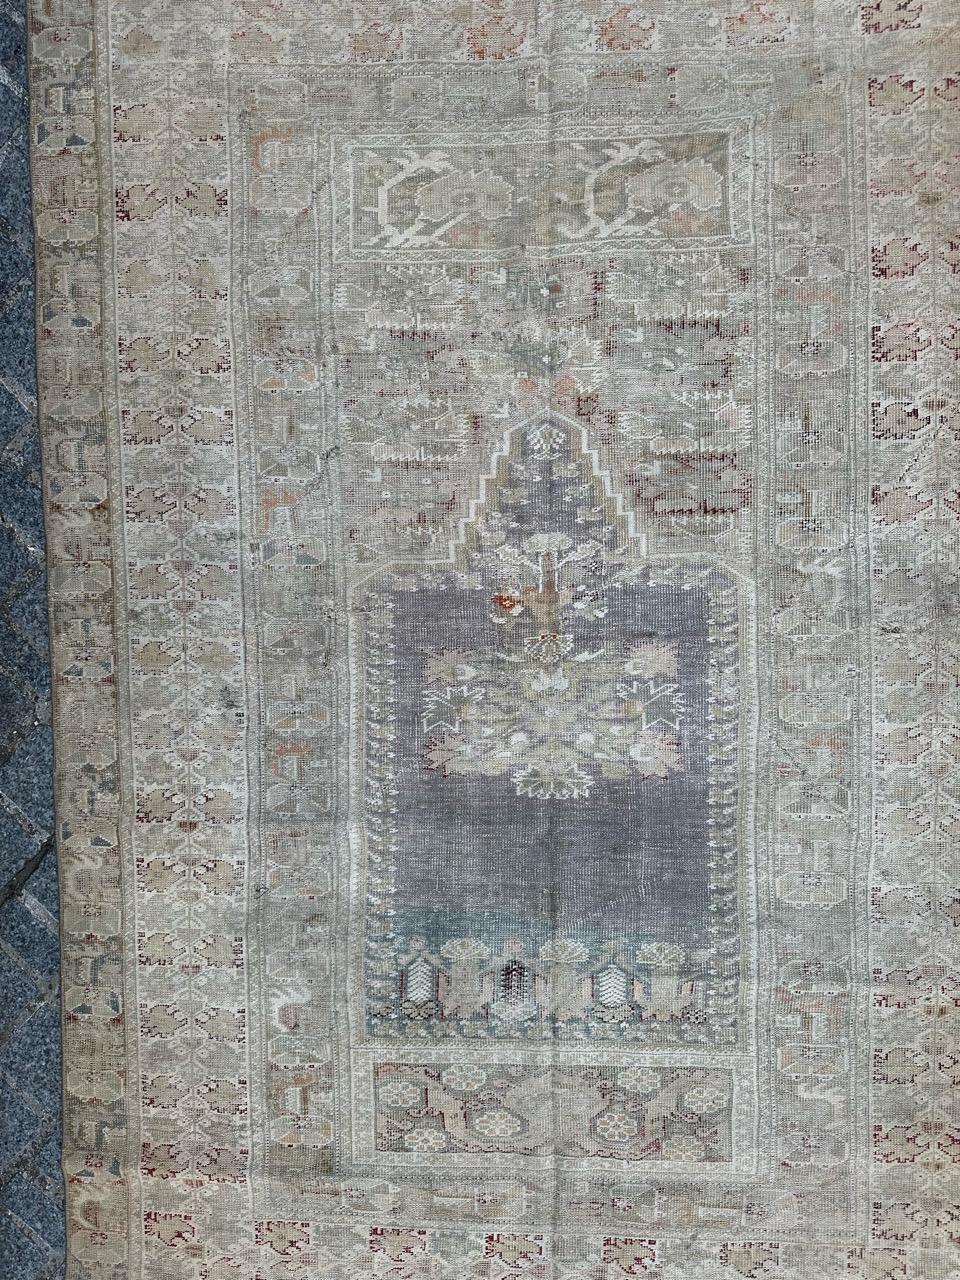 Joli tapis turc du début du 19ème siècle de NO AGE, avec un beau motif de mihrab de très vieux tapis turcs, et de belles couleurs naturelles, usures uniformes et peu de dommages, dus à l'âge et à l'utilisation. Entièrement et finement noué à la main